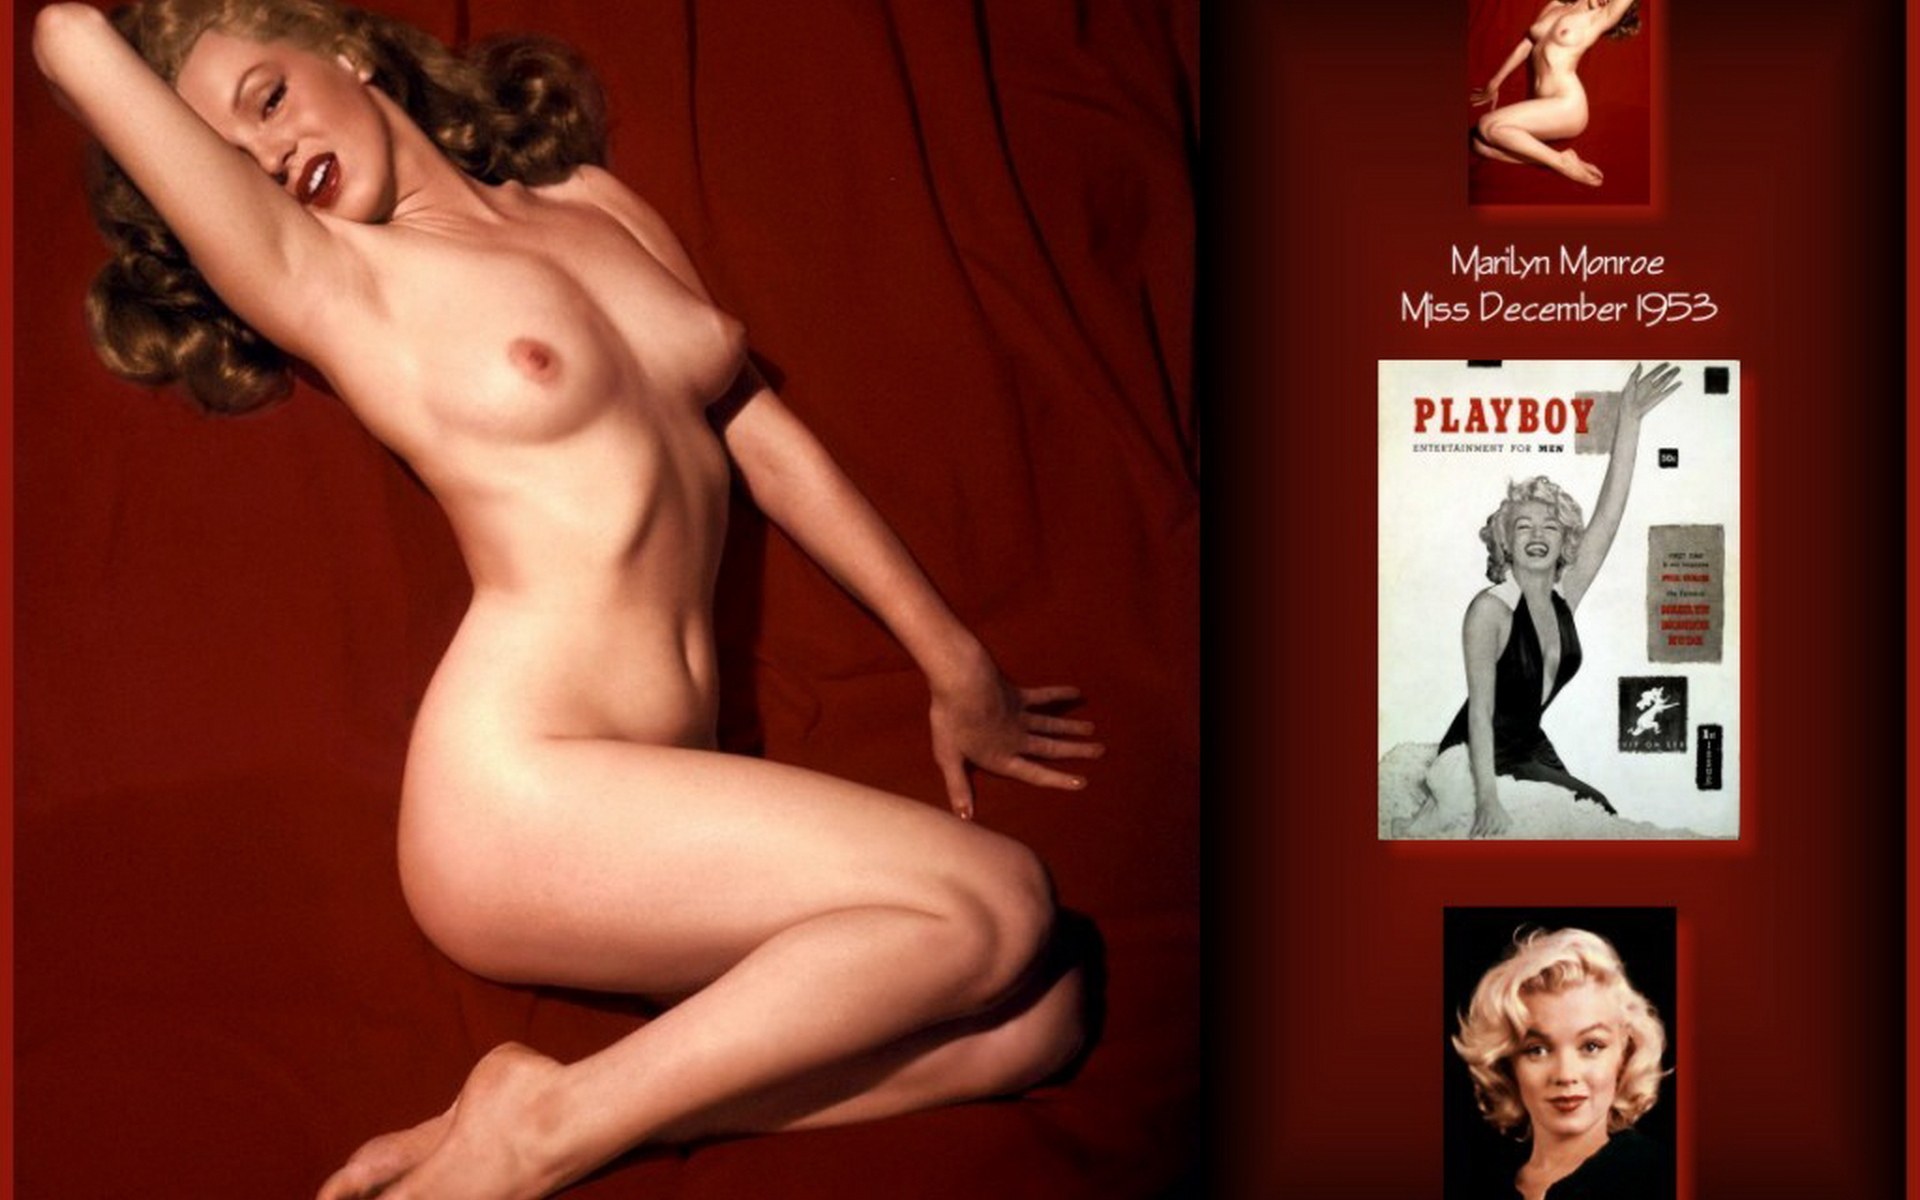 Marilyn monroe playboy photos